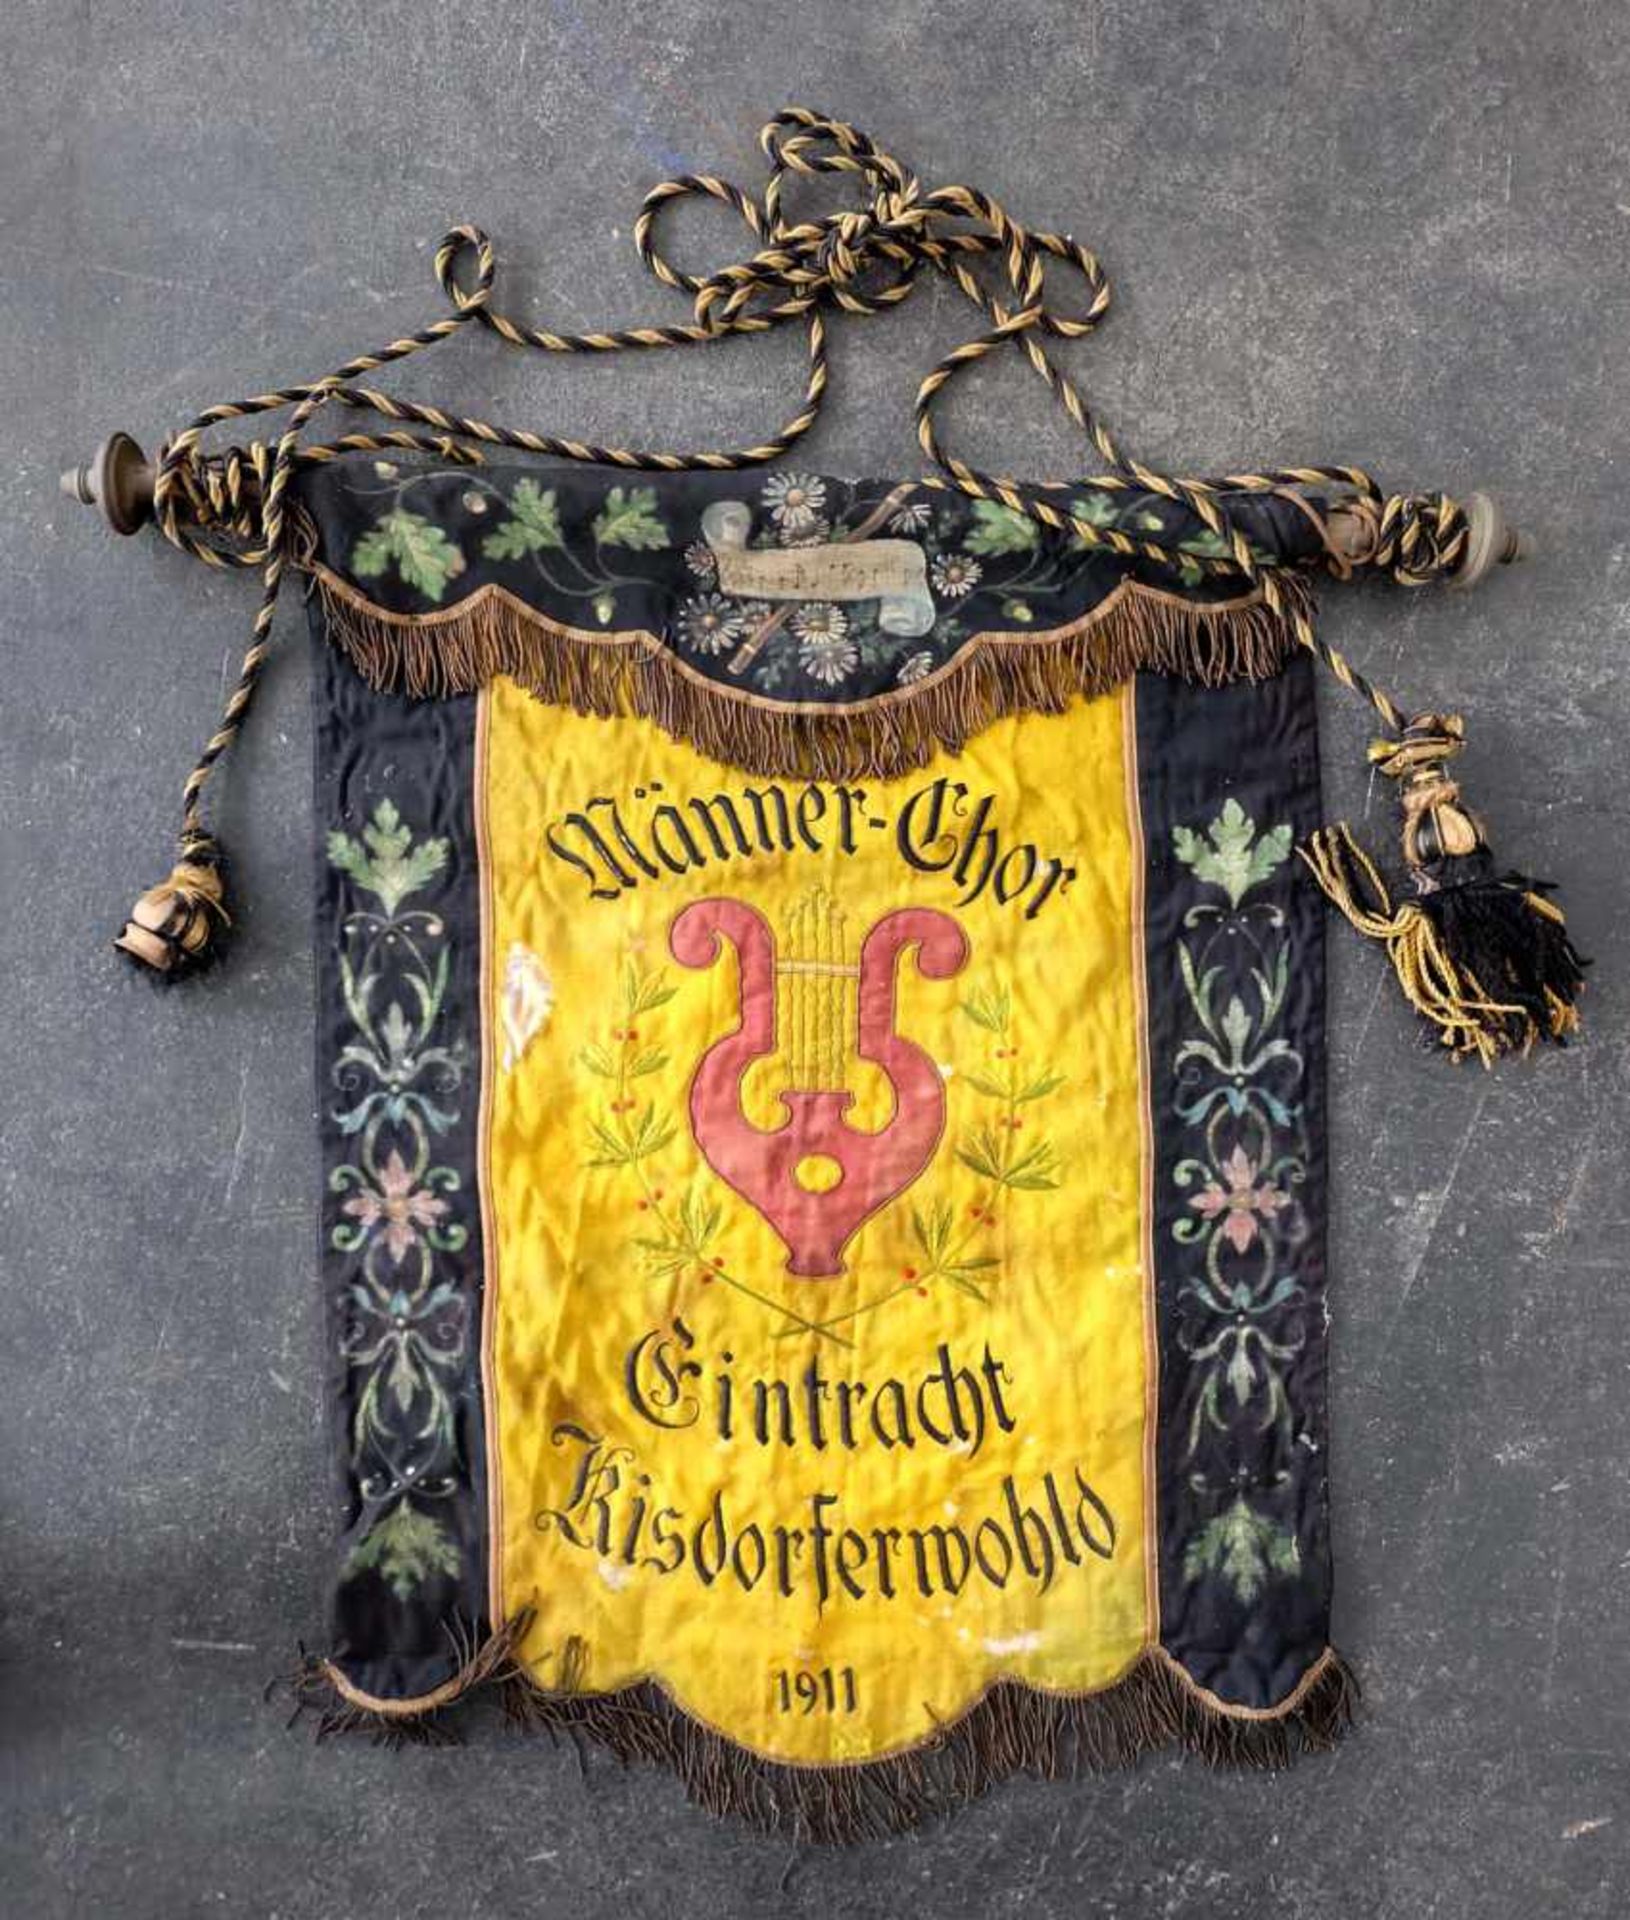 FAHNE, Männerchor Eintracht Kisdorferwohl 1911, gestickt und bemalt, orig. Stange mit